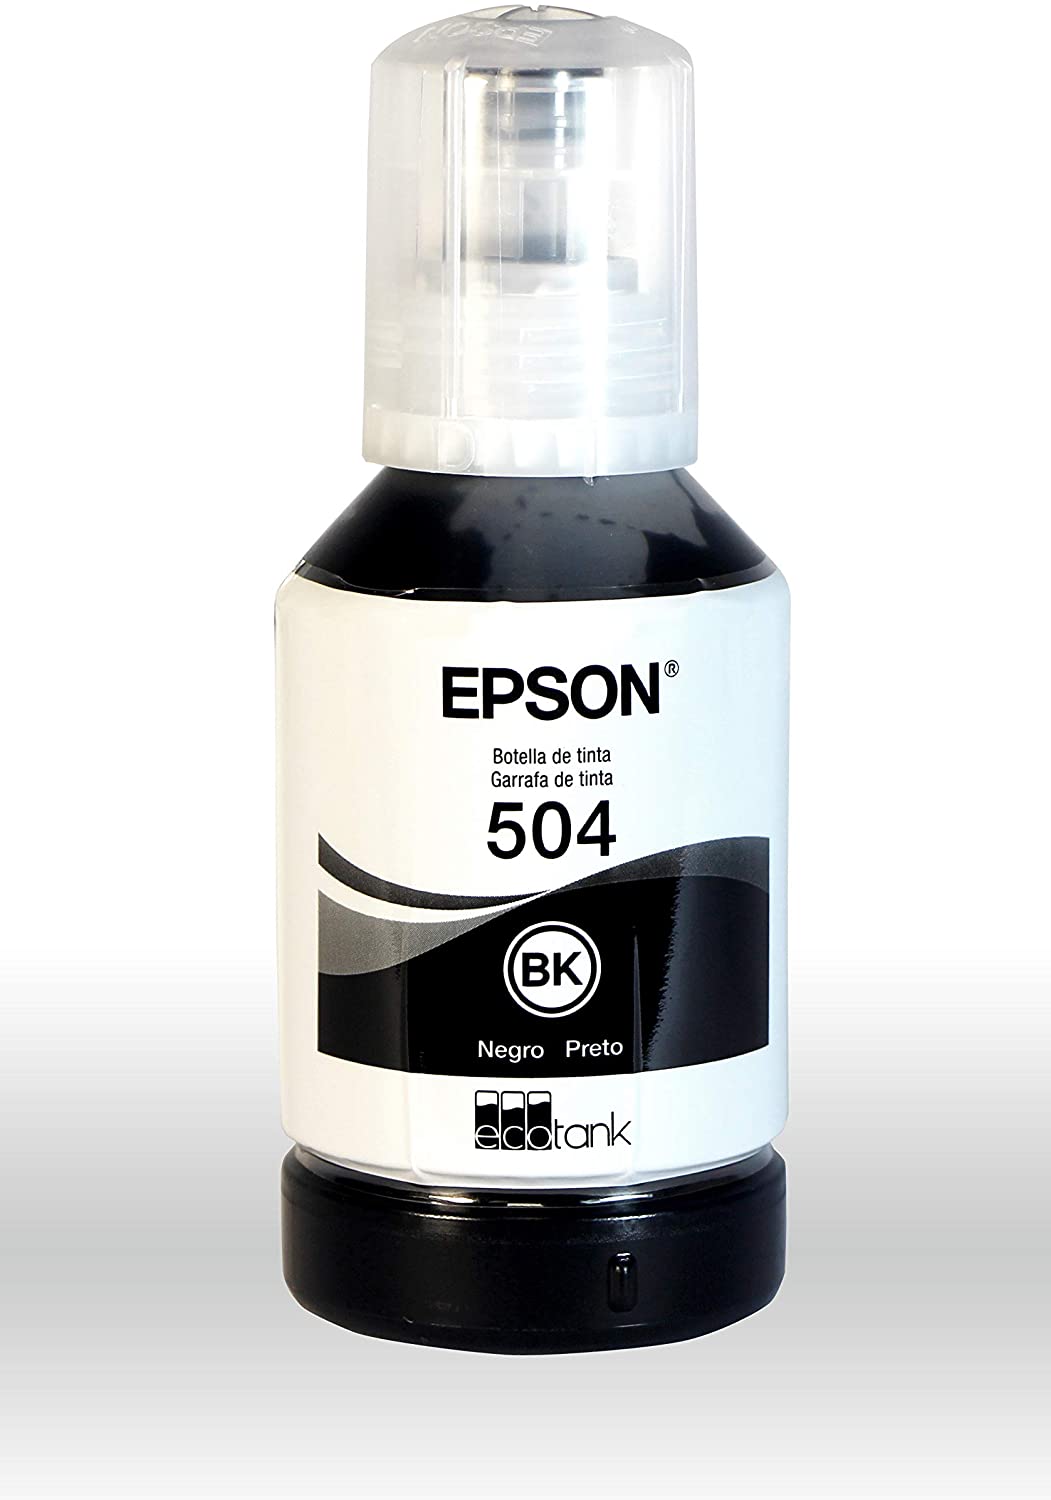 Botella de Tinta Epson Ecotank 504 - Negro